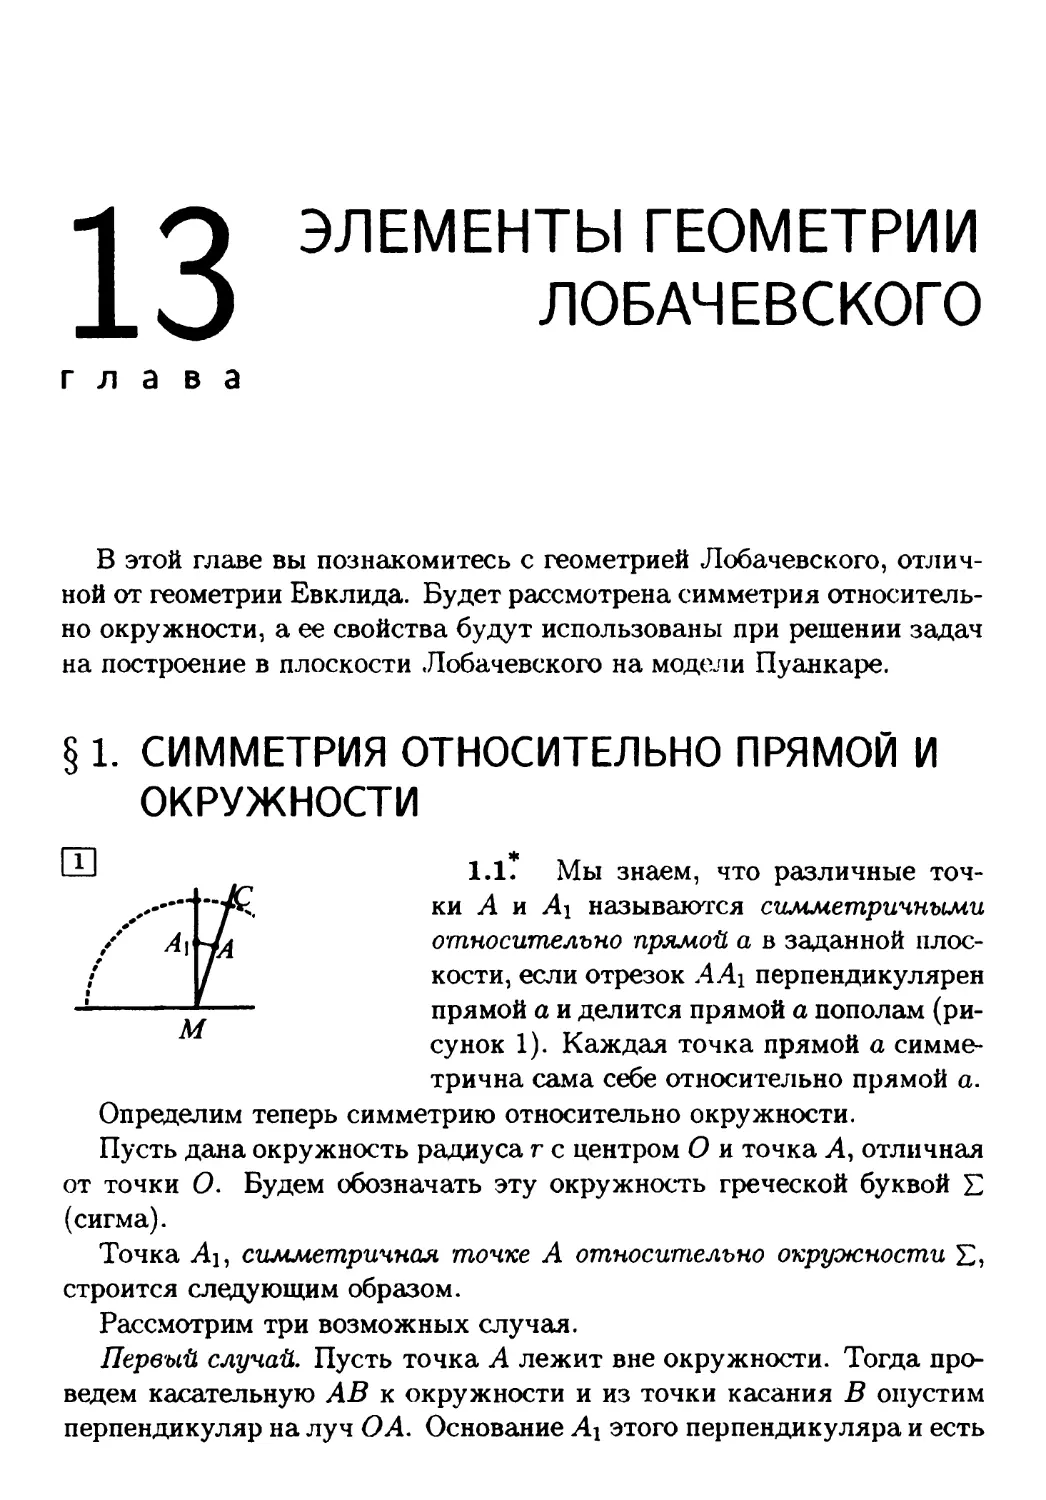 Глава 13. Элементы геометрии Лобачевского